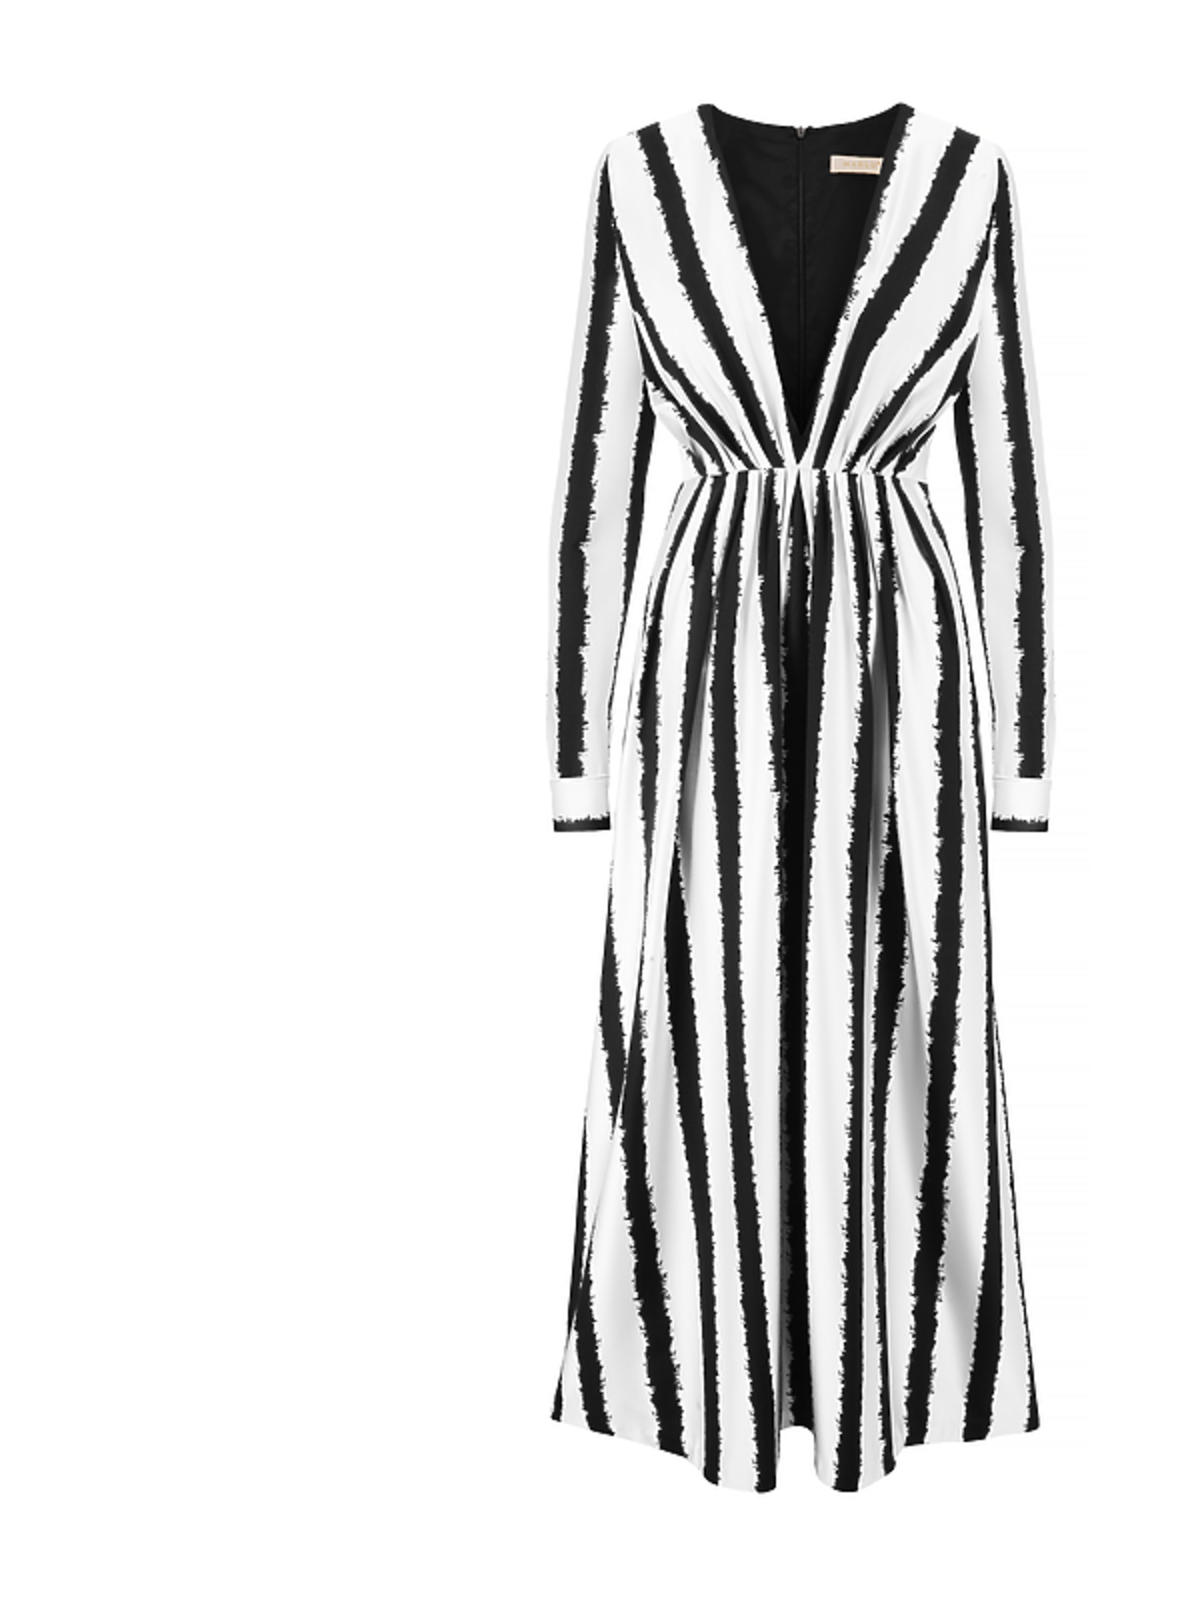 MARLU biała, asymetryczna sukienka z kwiatowym wzorem 1790 zł